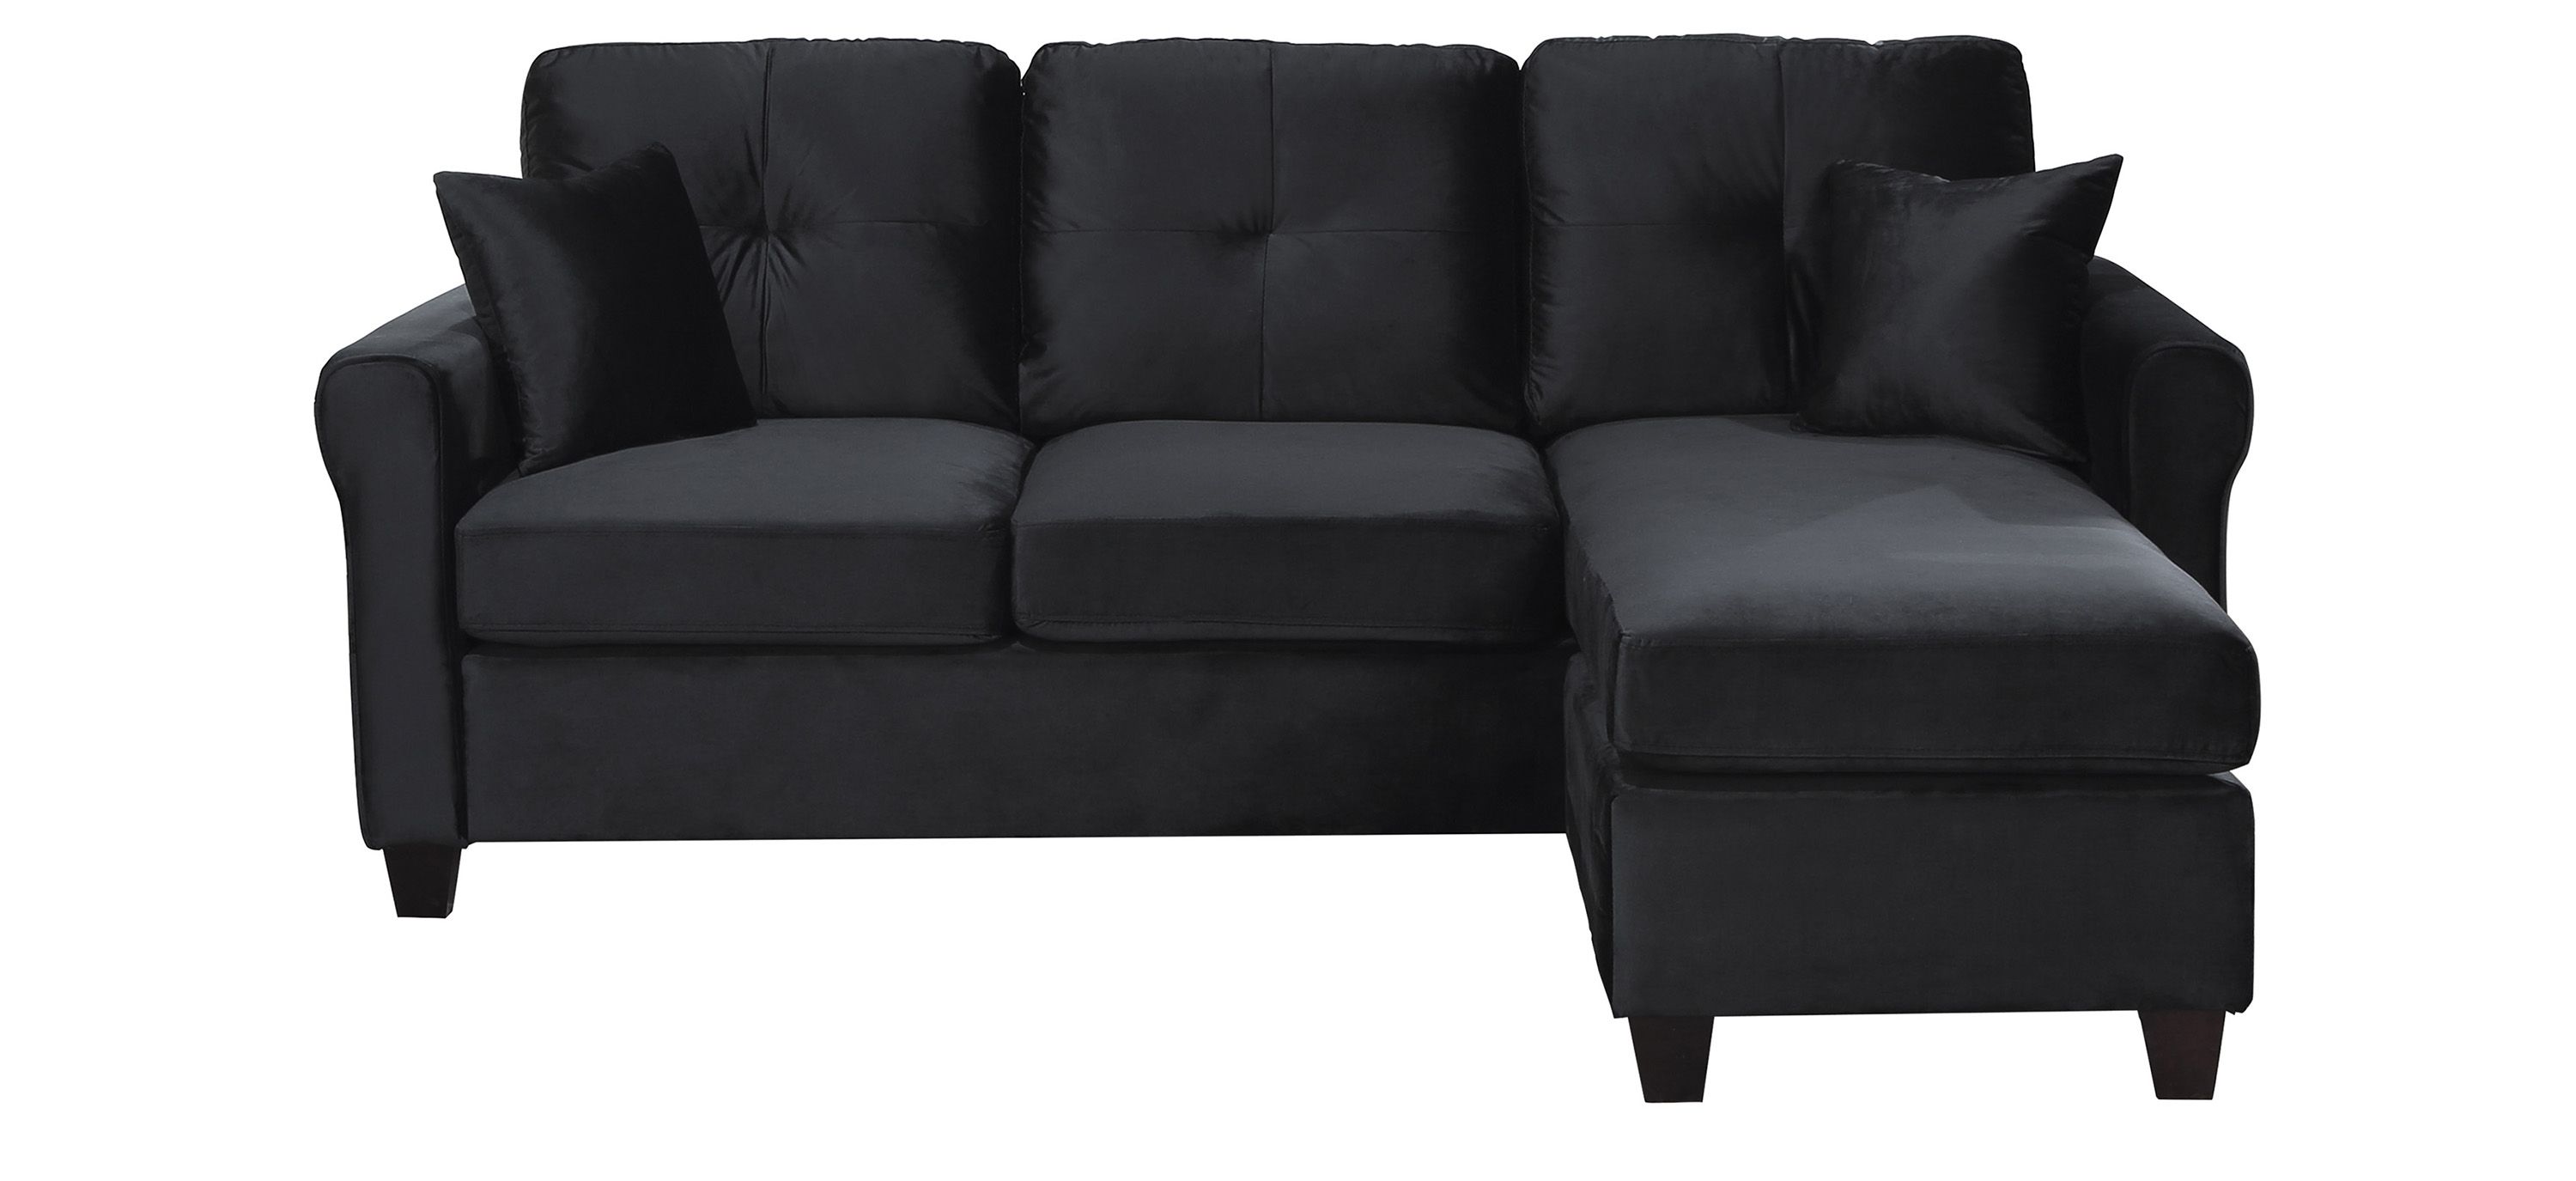 Lambent Reversible Sectional Sofa